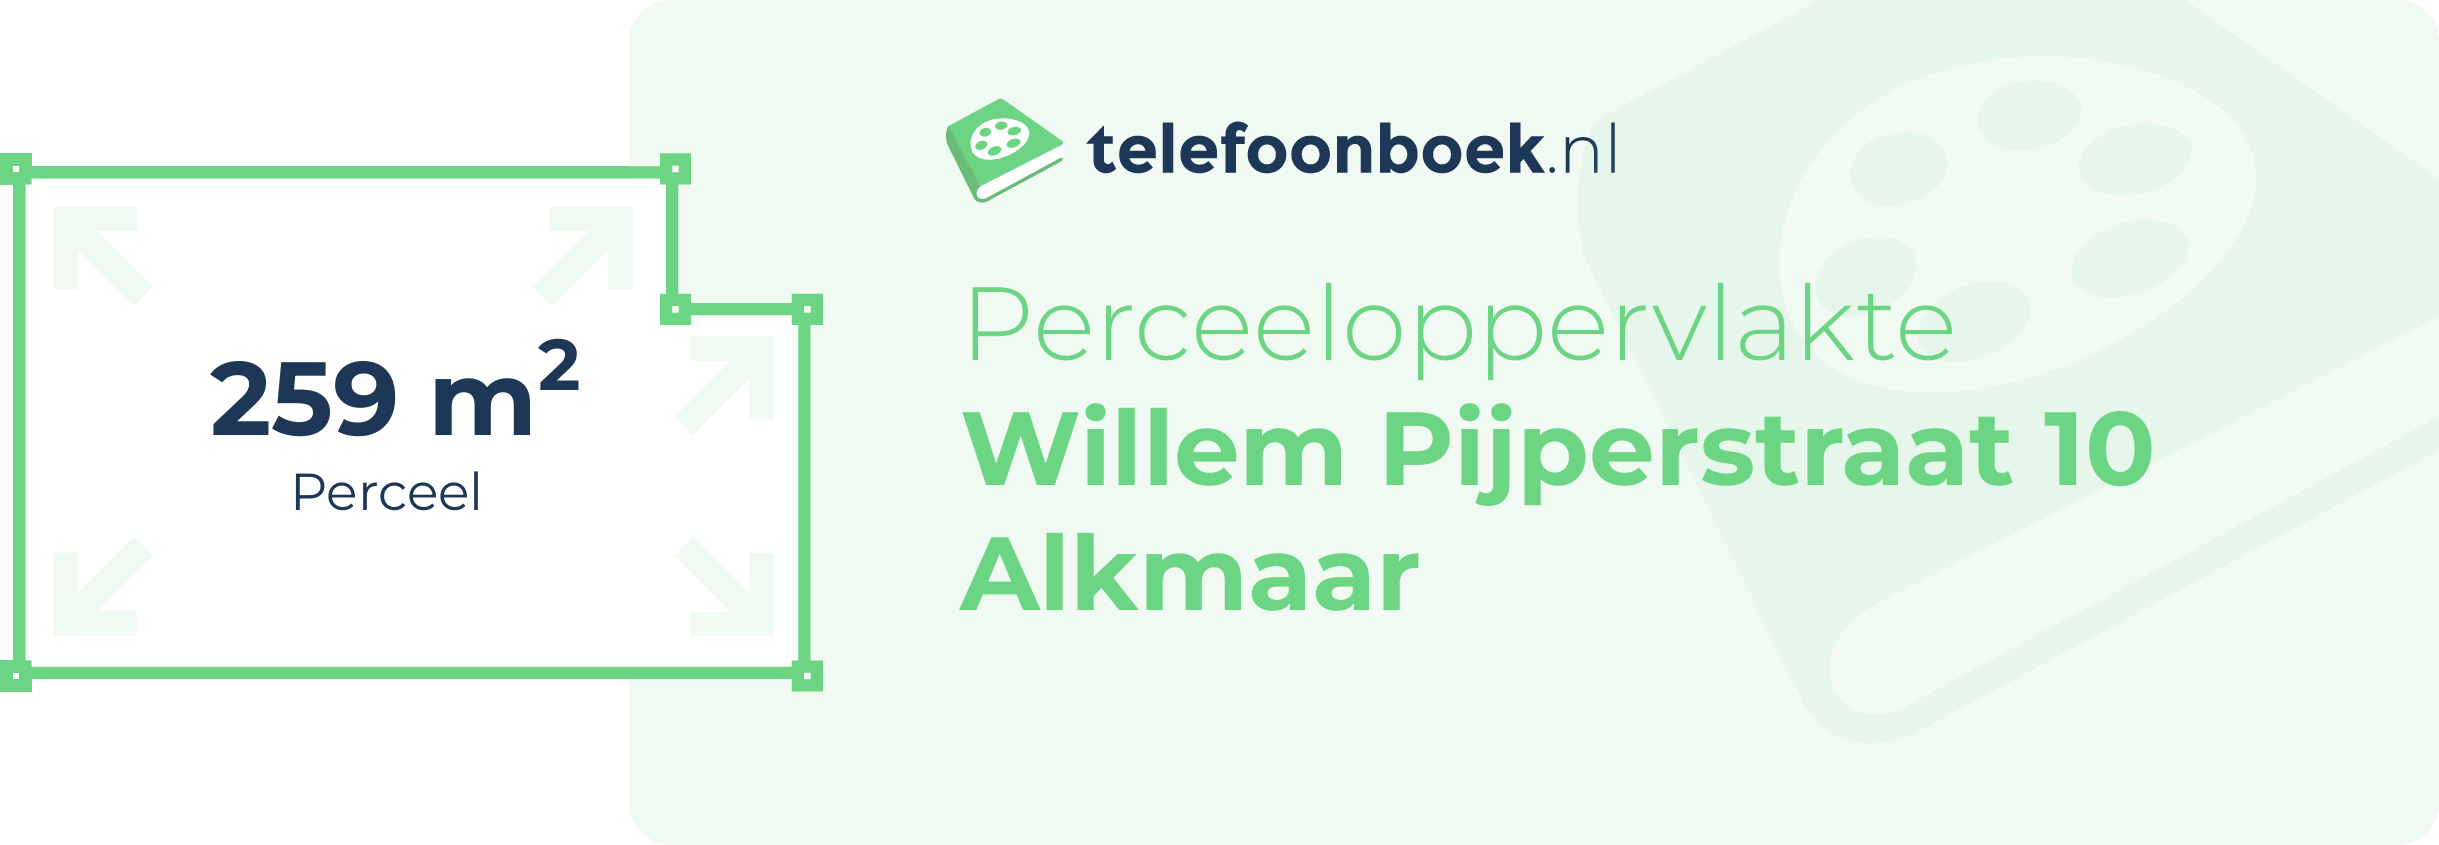 Perceeloppervlakte Willem Pijperstraat 10 Alkmaar